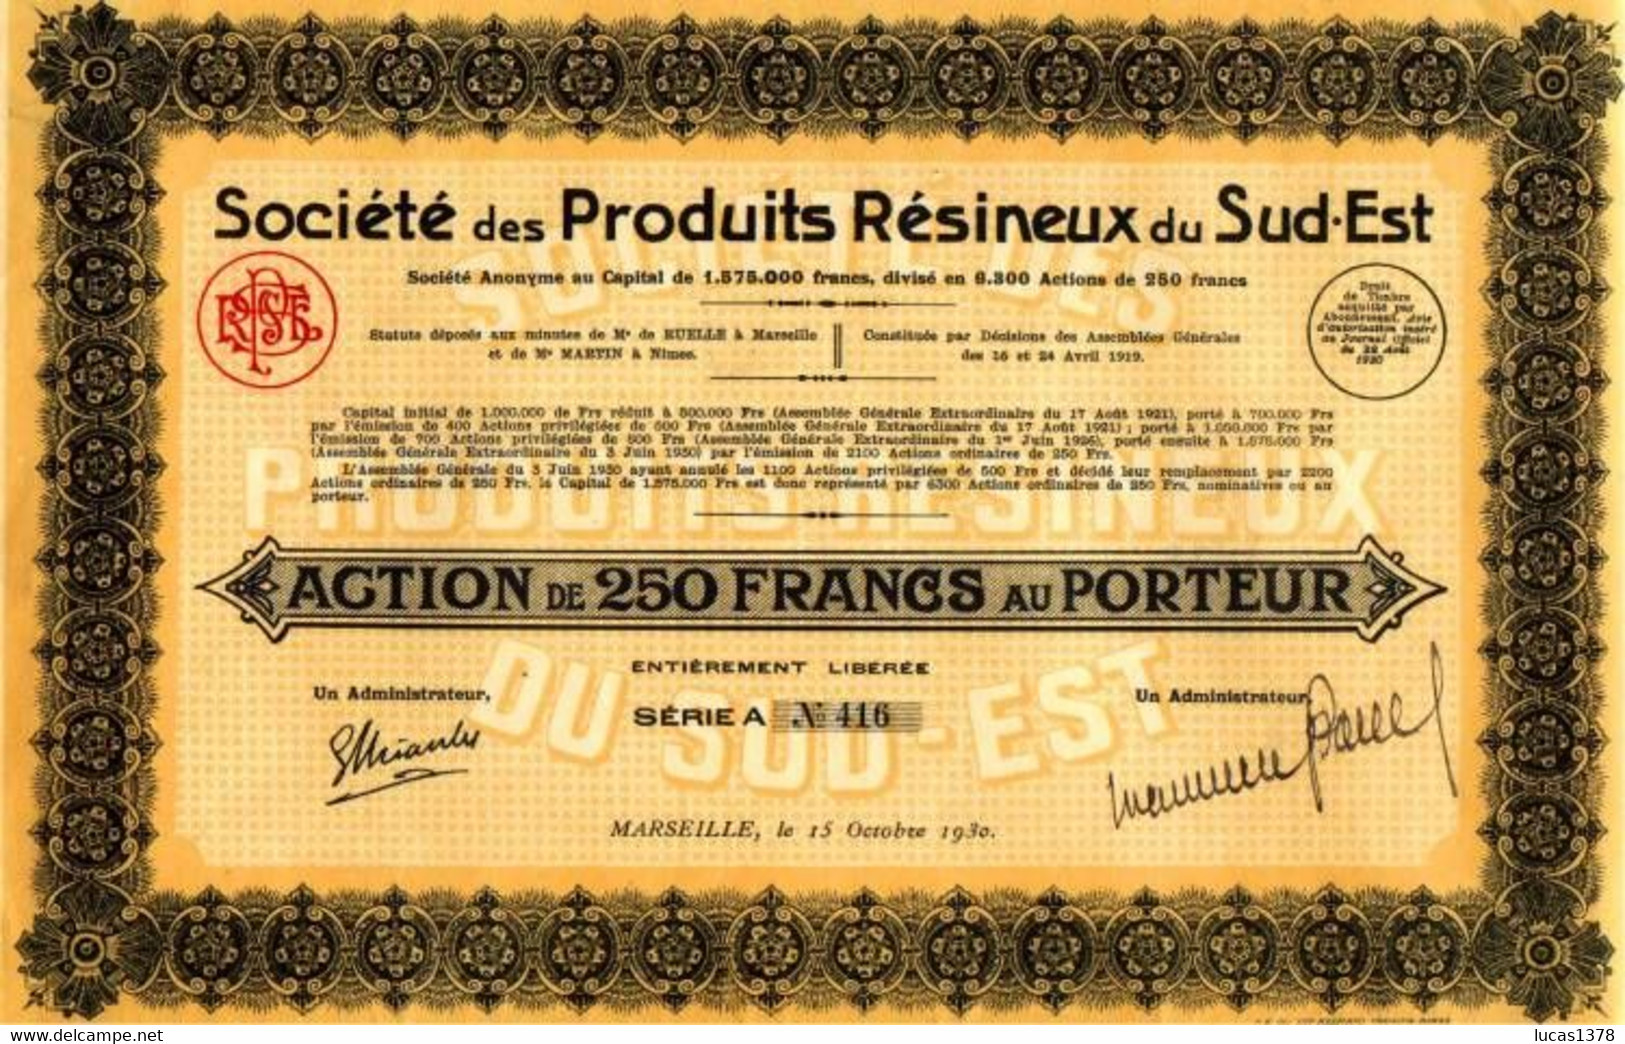 MARSEILLE / 1930 / SOCIETE DES PRODUITS RESINEUX DU SUD EST / RARE - Agricultura